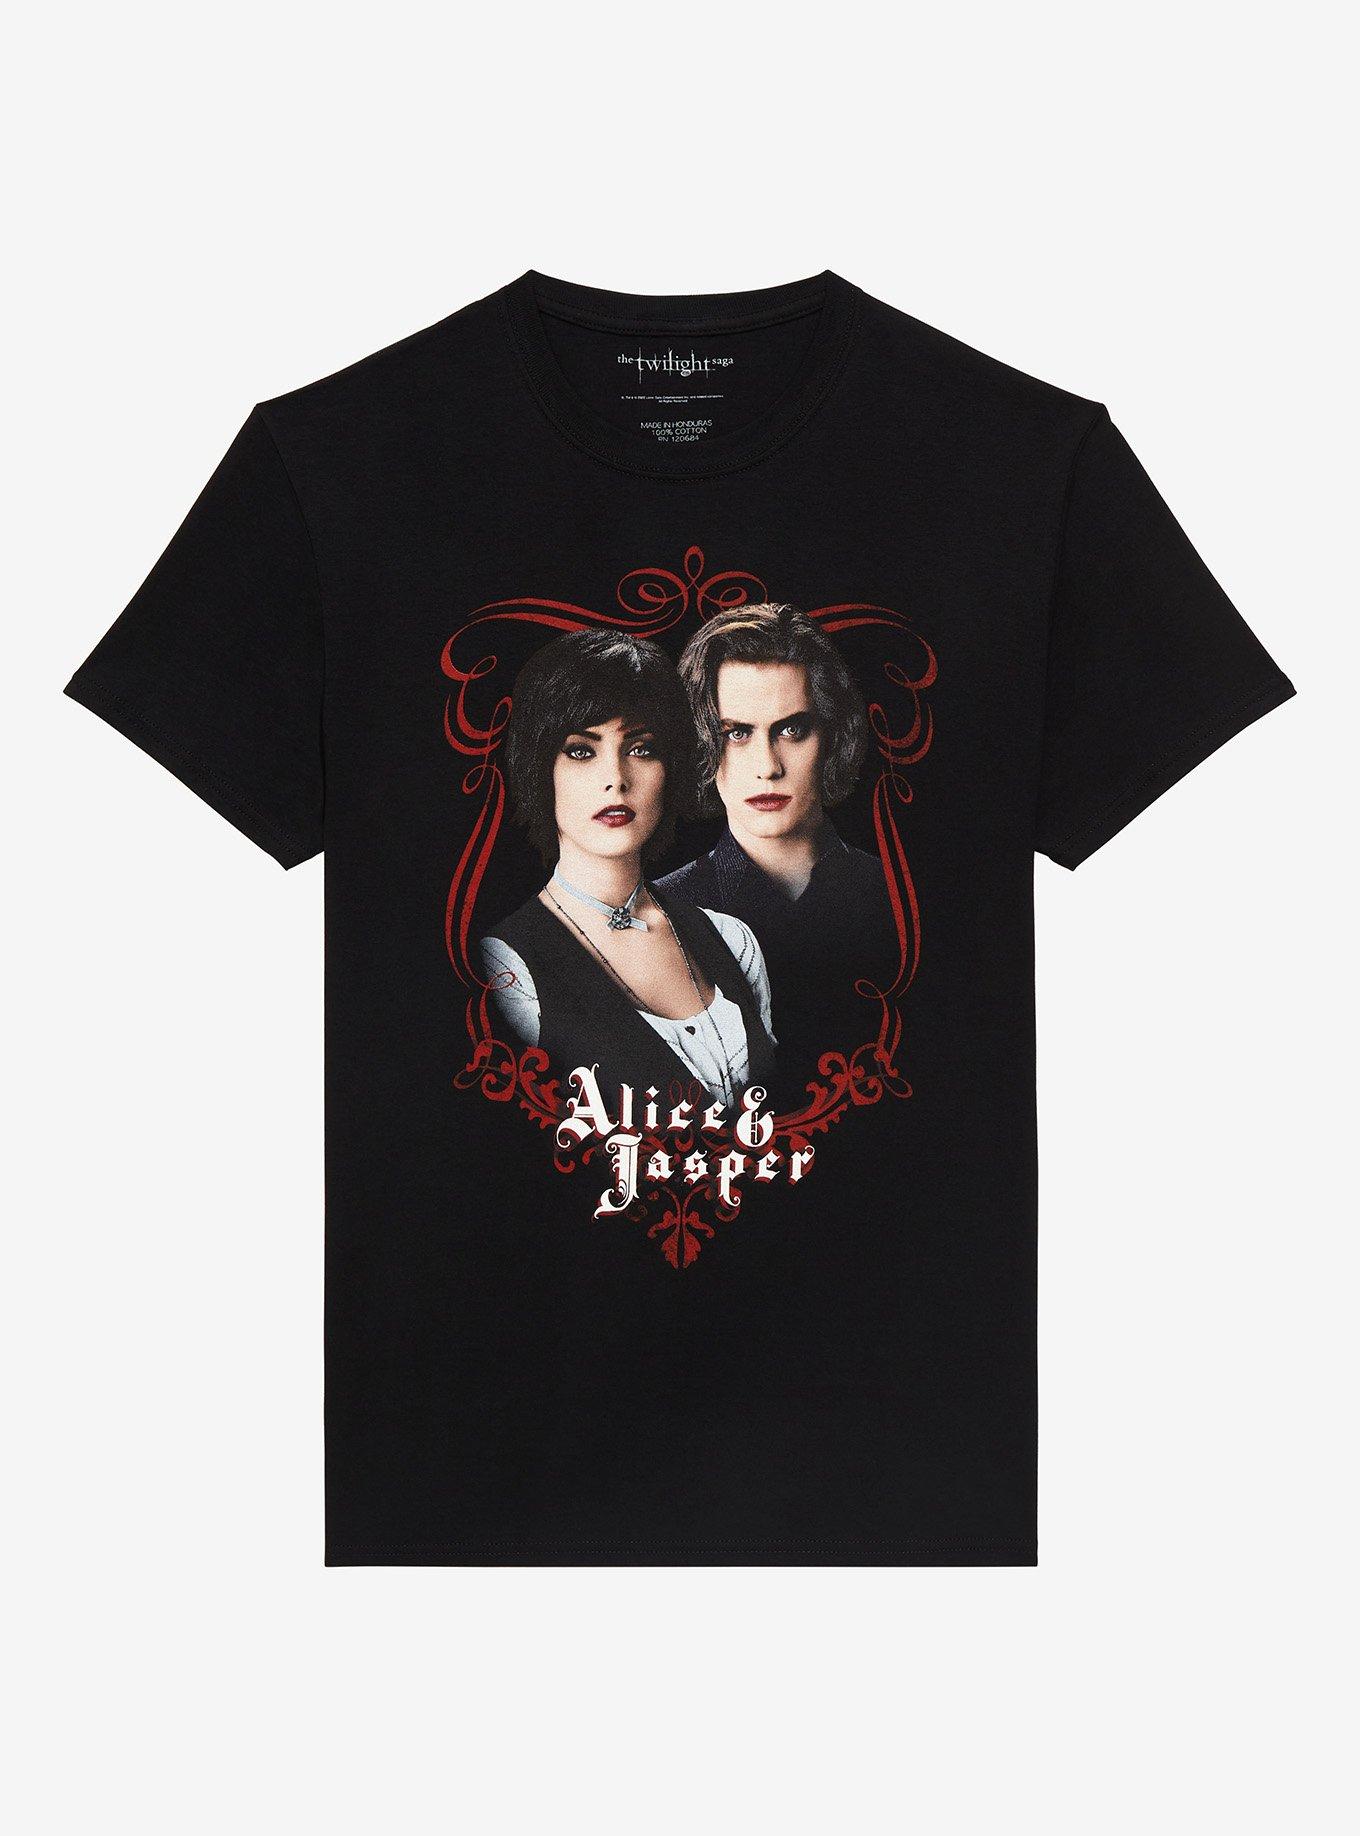 Twilight Alice and Jasper Boyfriend Fit Girls T-Shirt